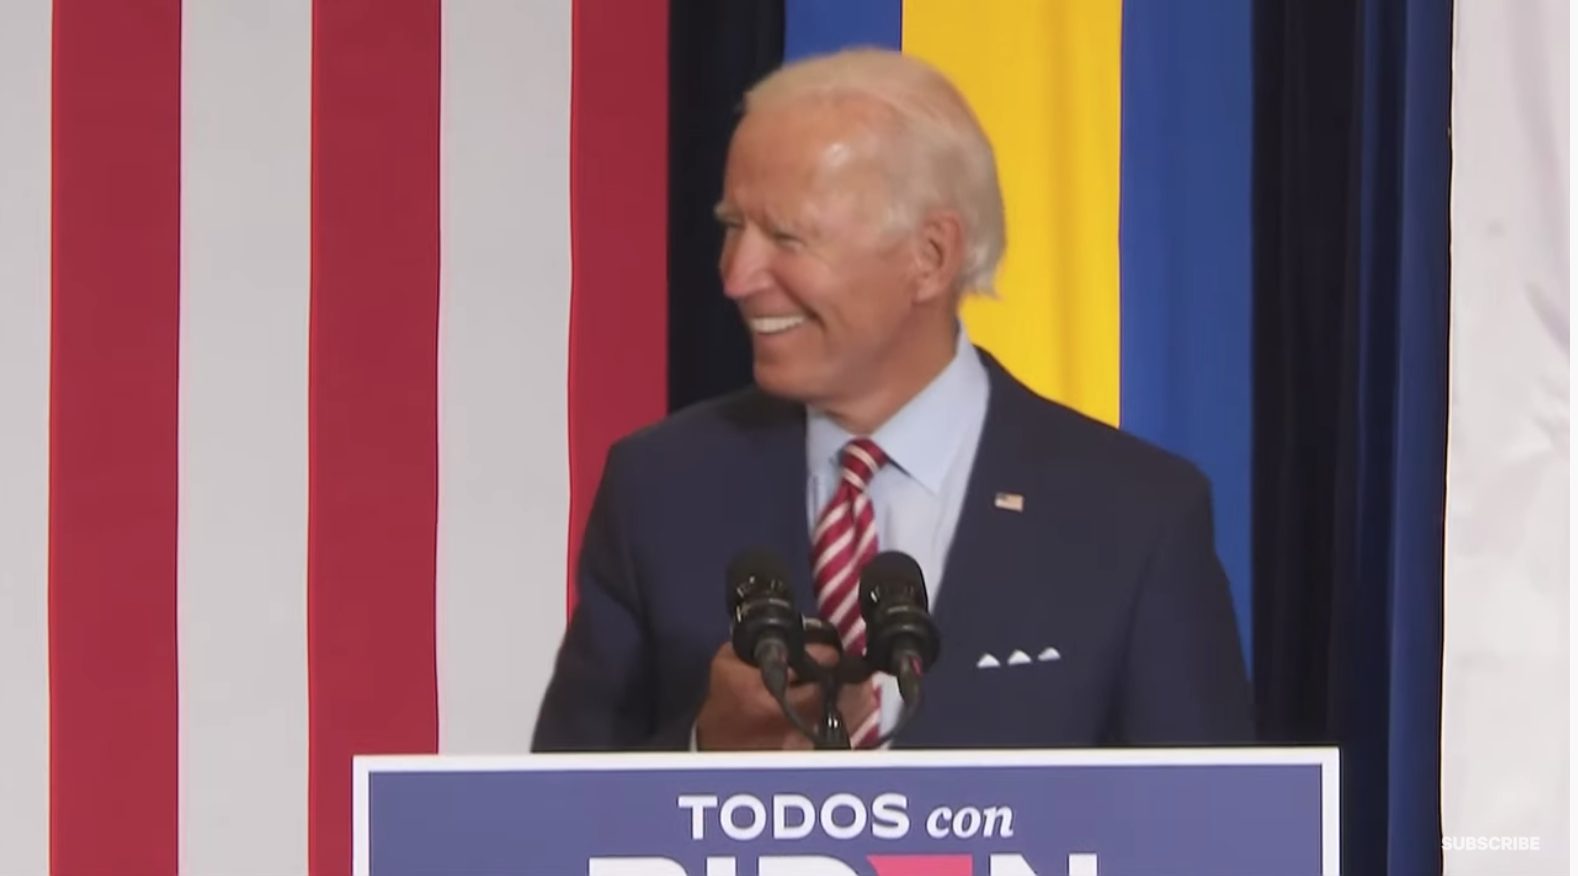 Alexa, Play "Despacito": Biden Opens Florida Speech By Awkwardly Bobbing To Song From His Phone